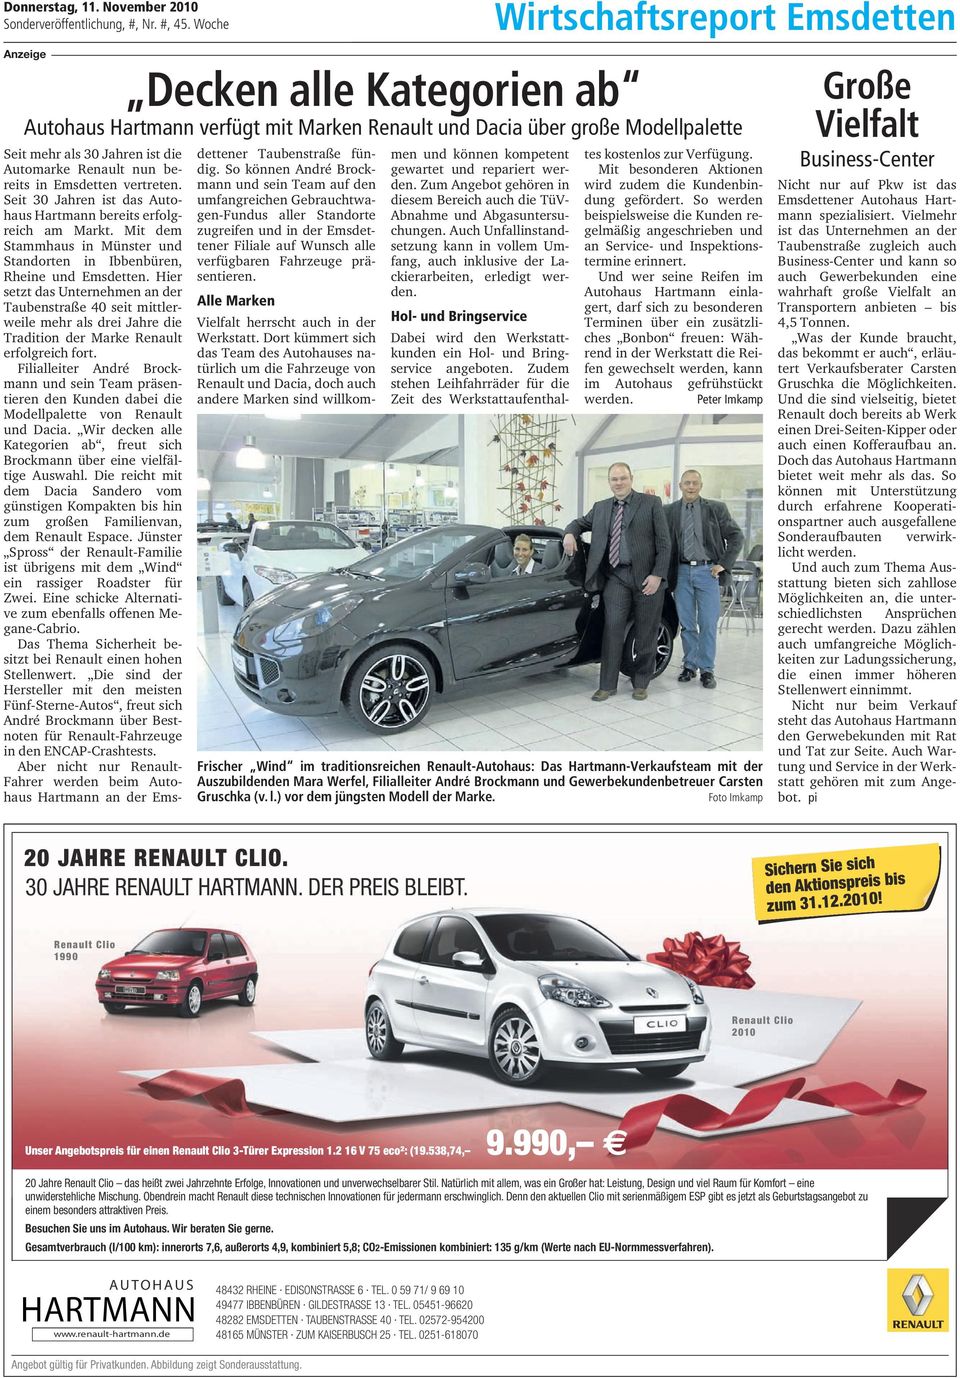 Hier setzt das Unternehmen an der Taubenstraße 40 seit mittlerweile mehr als drei Jahre die Tradition der Marke Renault erfolgreich fort.